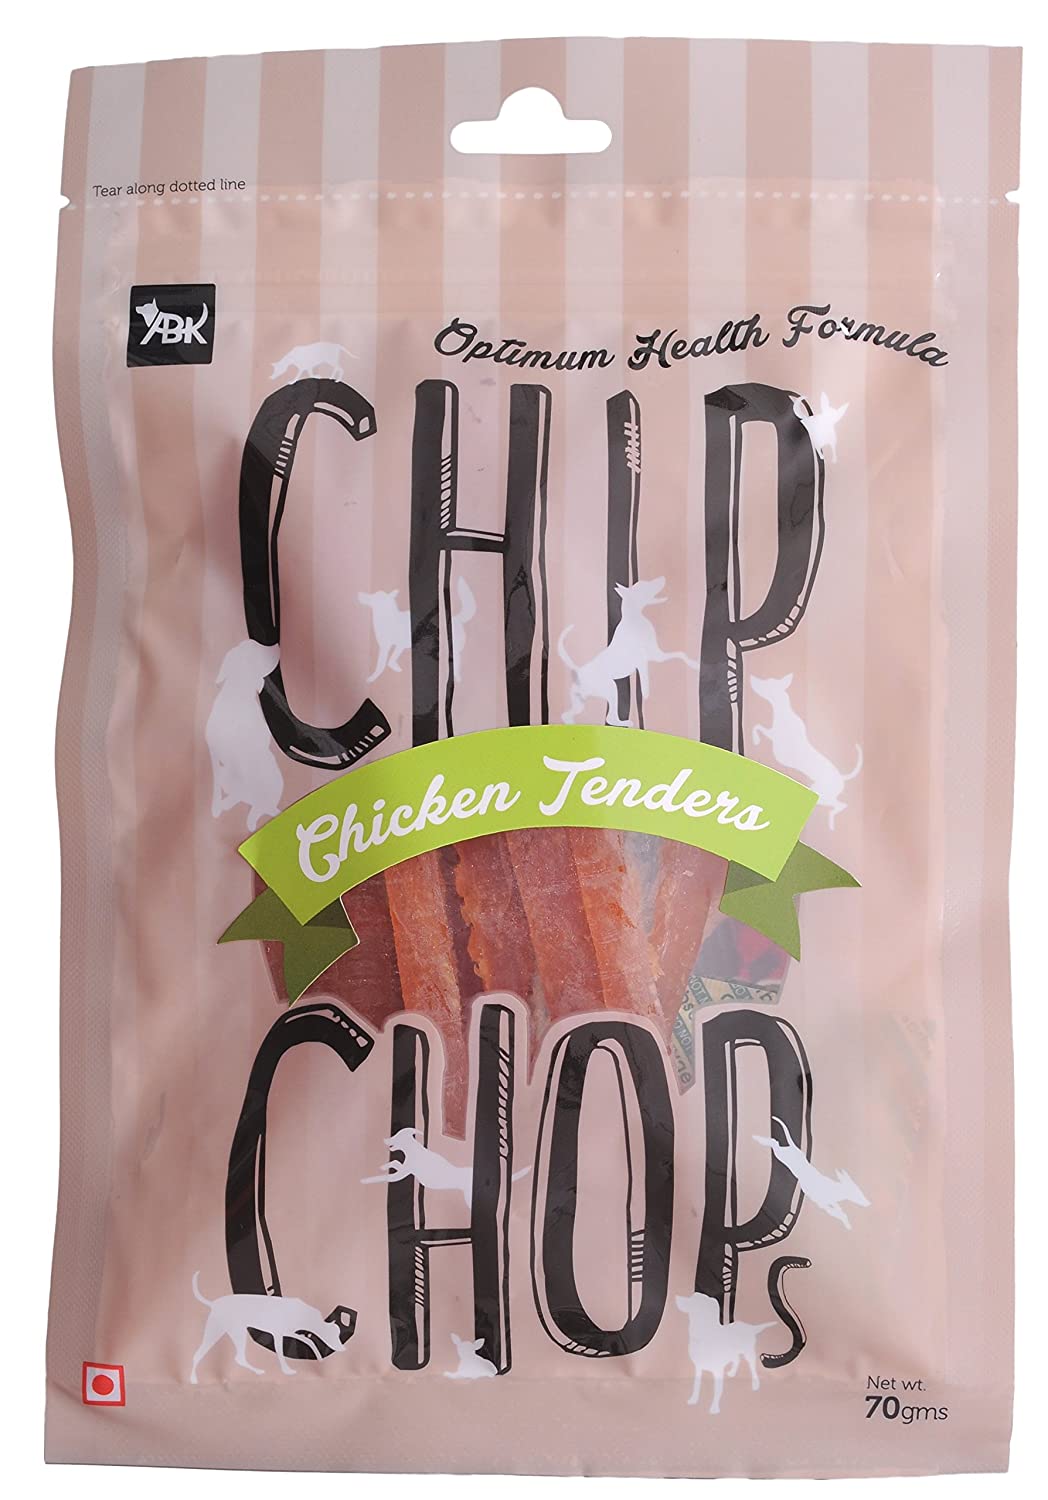 Chip Chop Chicken Tender